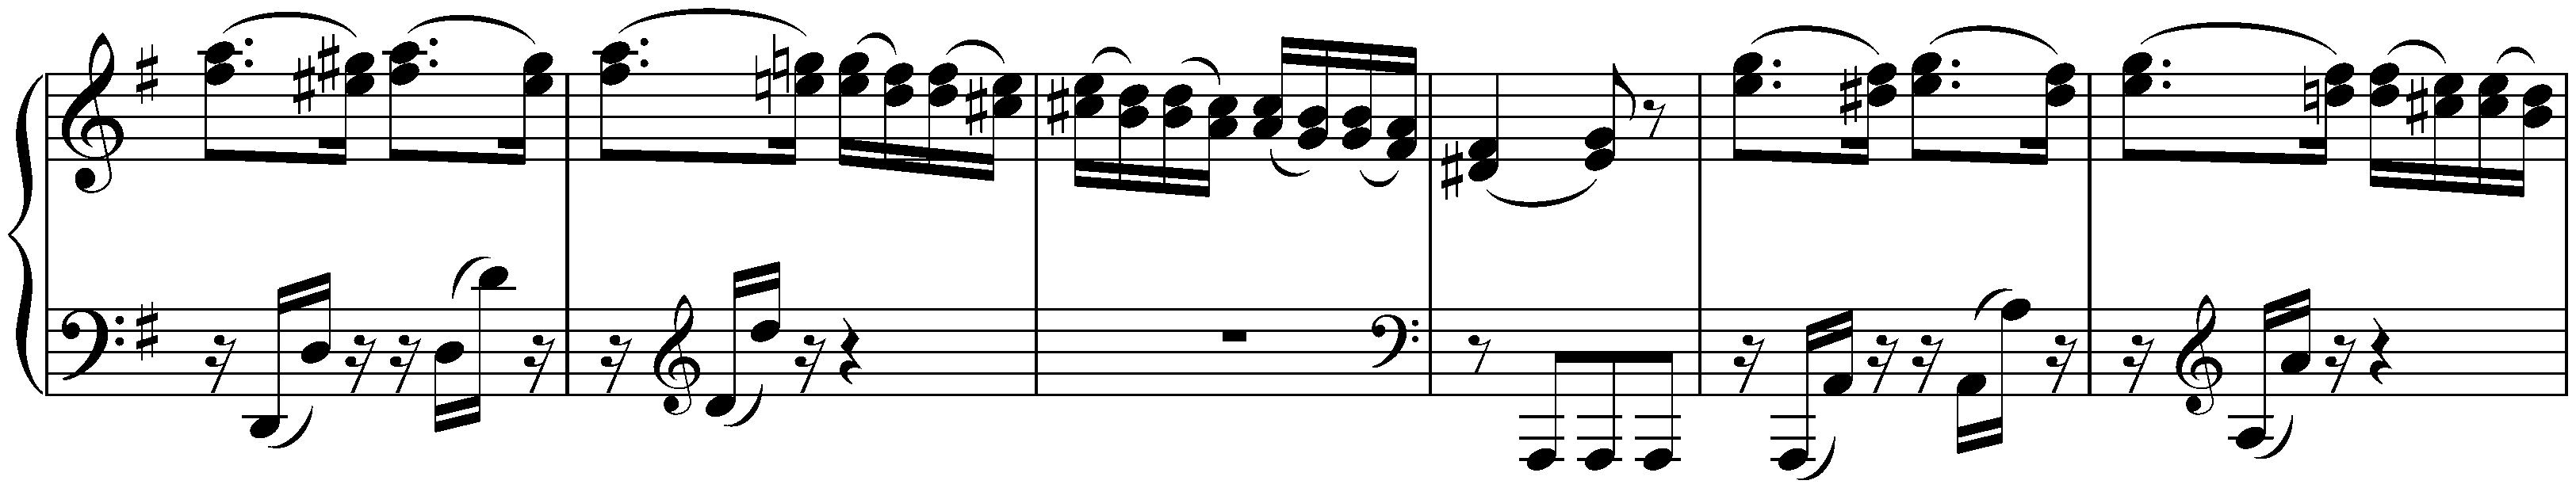 Sonata no. 10 in G major, op. 14 no. 2; 1. Allegro